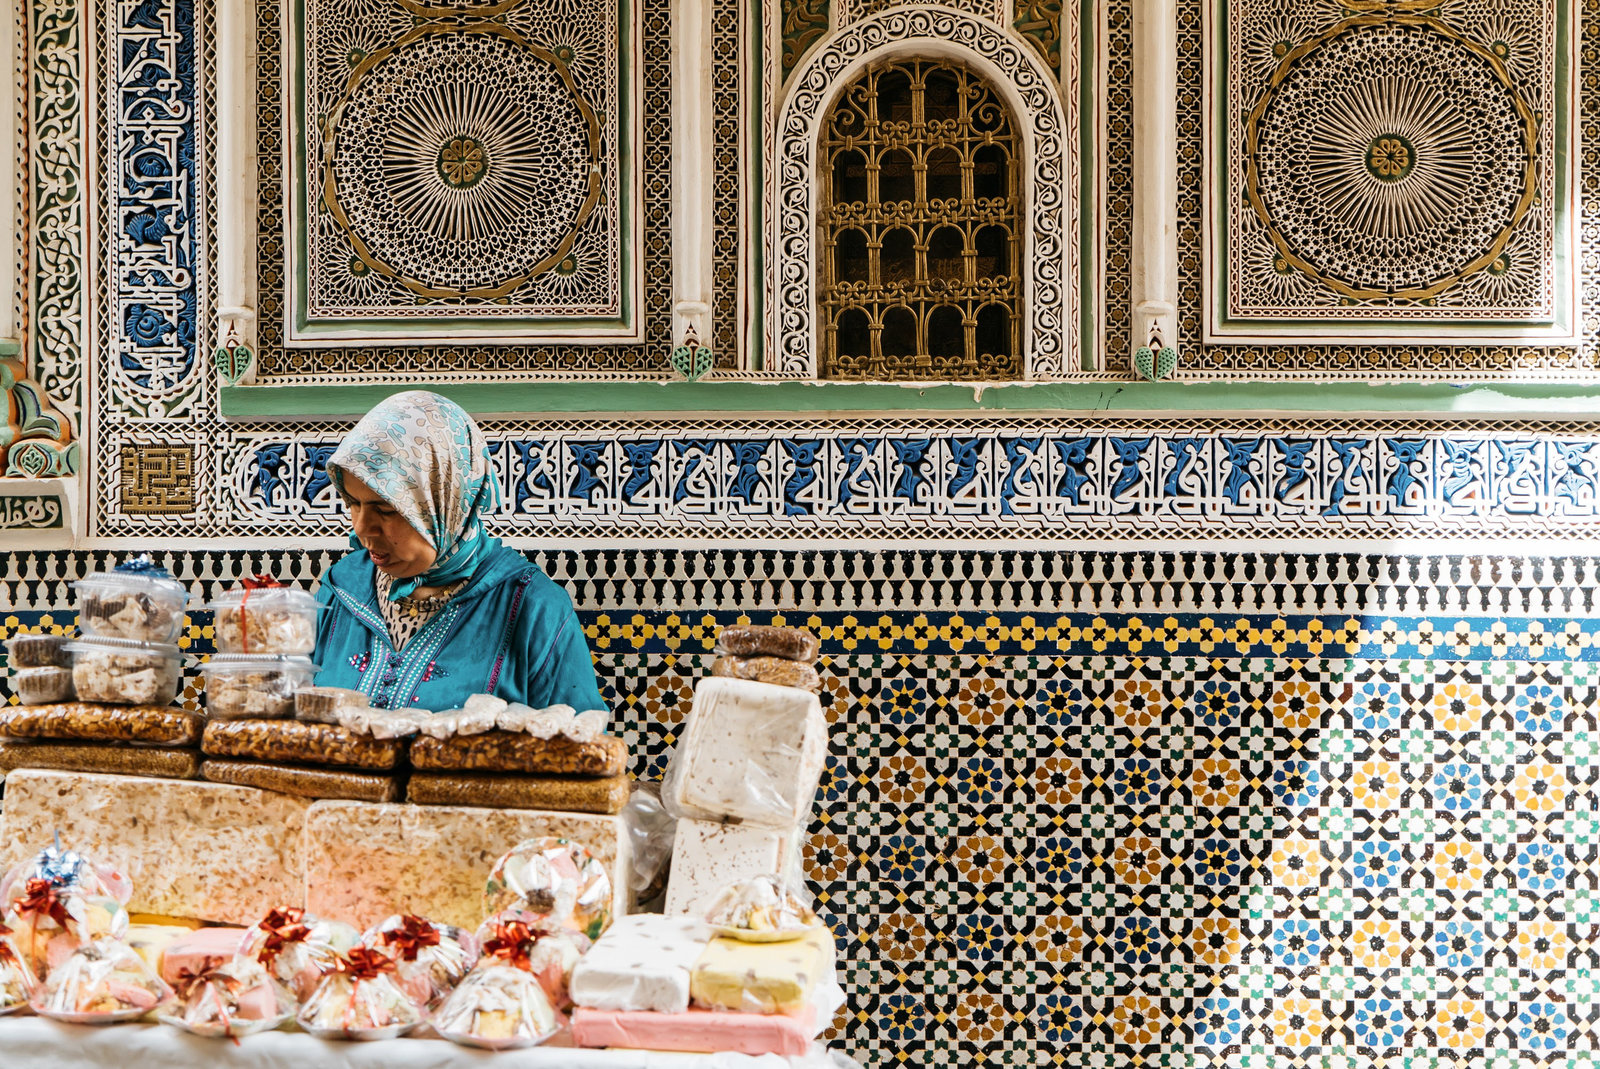 Sasha_Reiko_Photography_Travel_Morocco-144